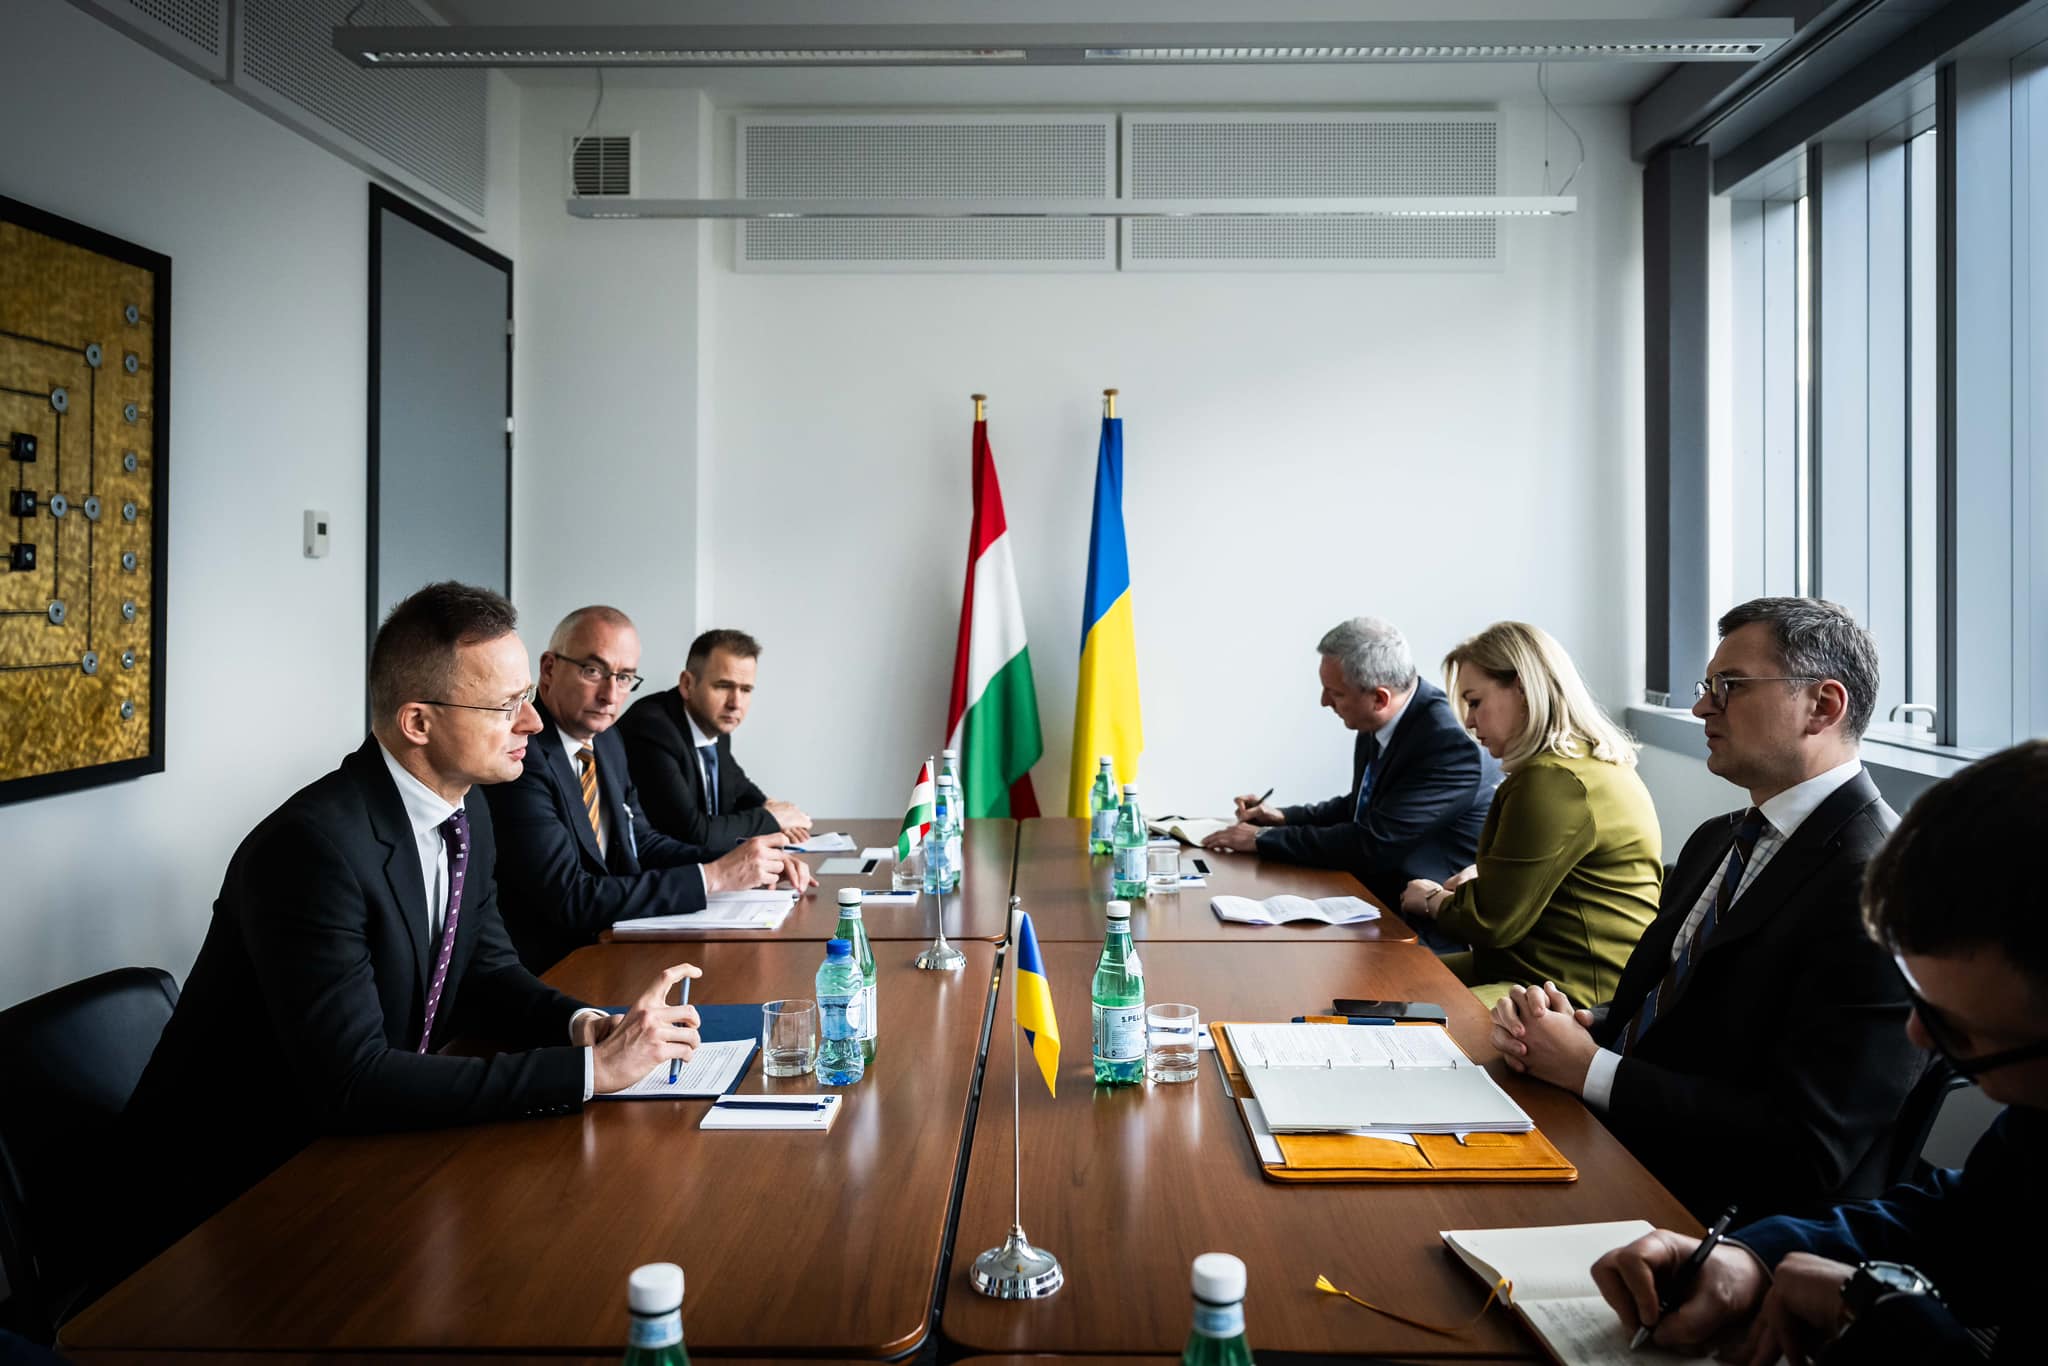 الحكومة المجرية تعيد بناء الثقة مع أوكرانيا